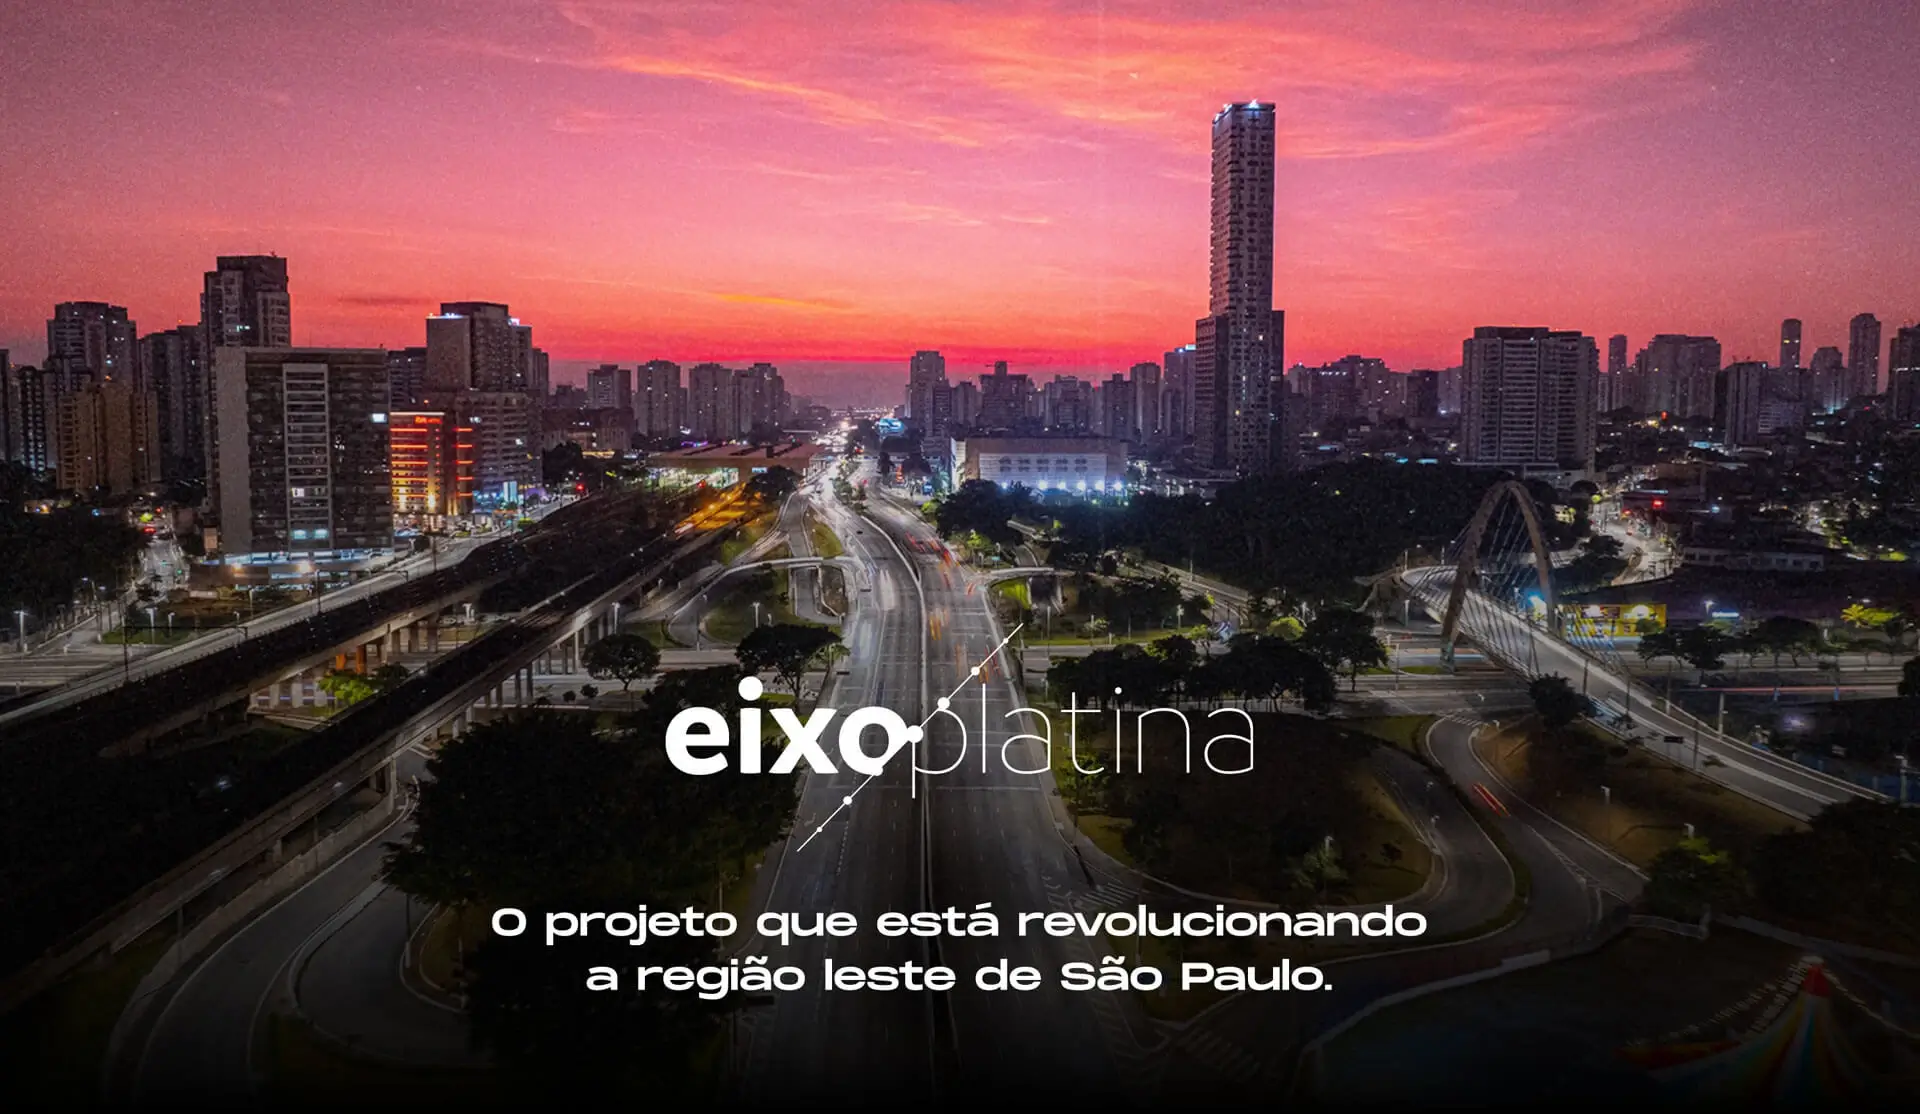 Eixo Platina - O projeto que está revolucionando a região de São Paulo